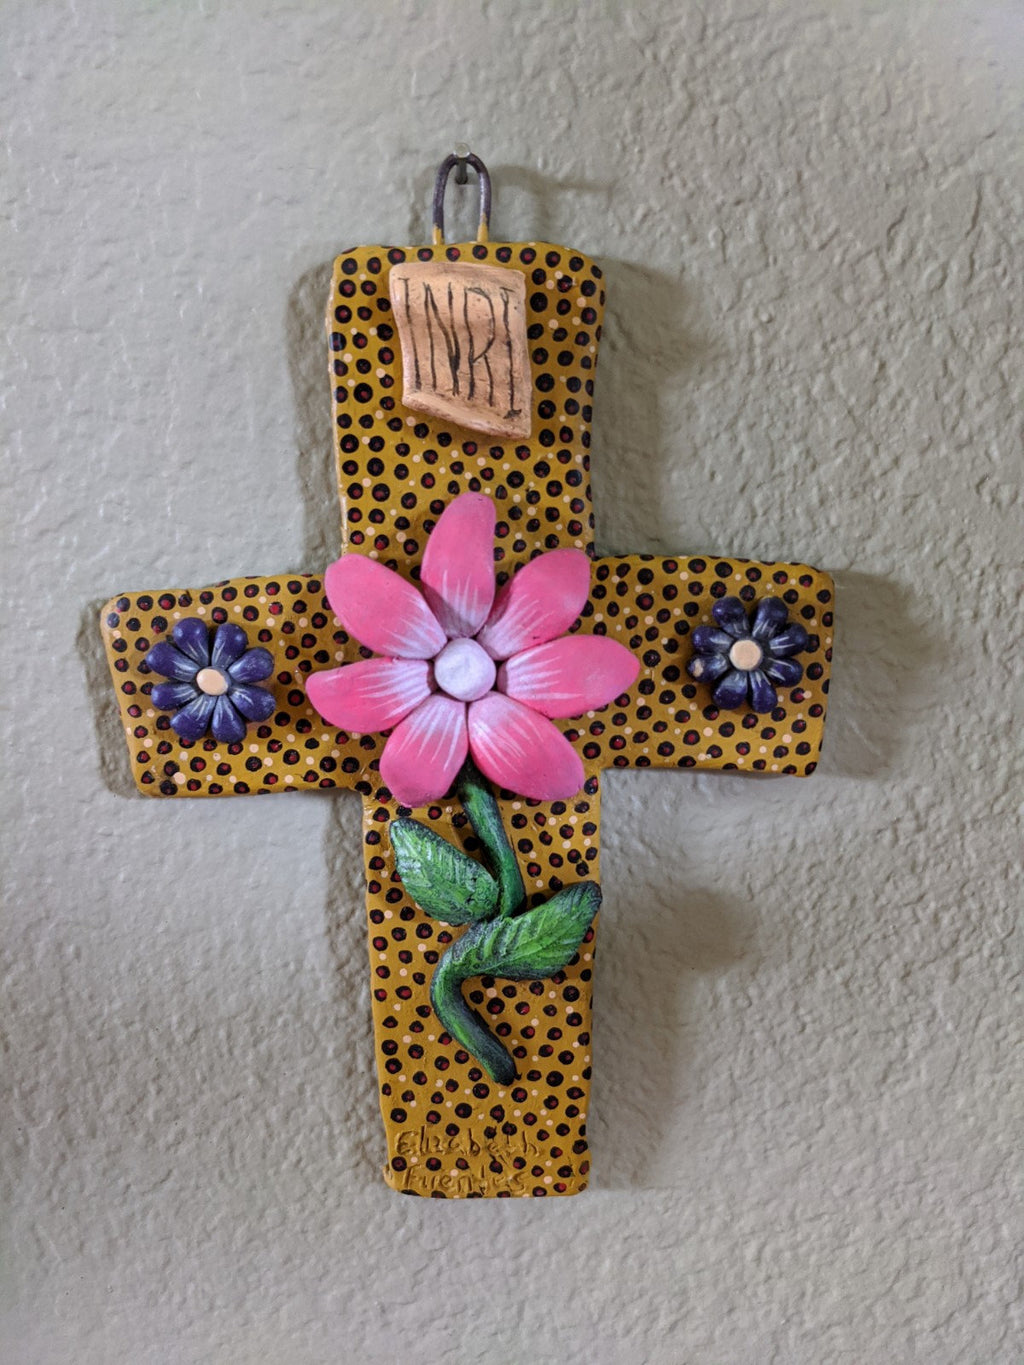 Handmade Cross, Cross Wall Decor, Cross Wall Art, Large Cross Decor, Cross Decorations, Religious Cross, Pink